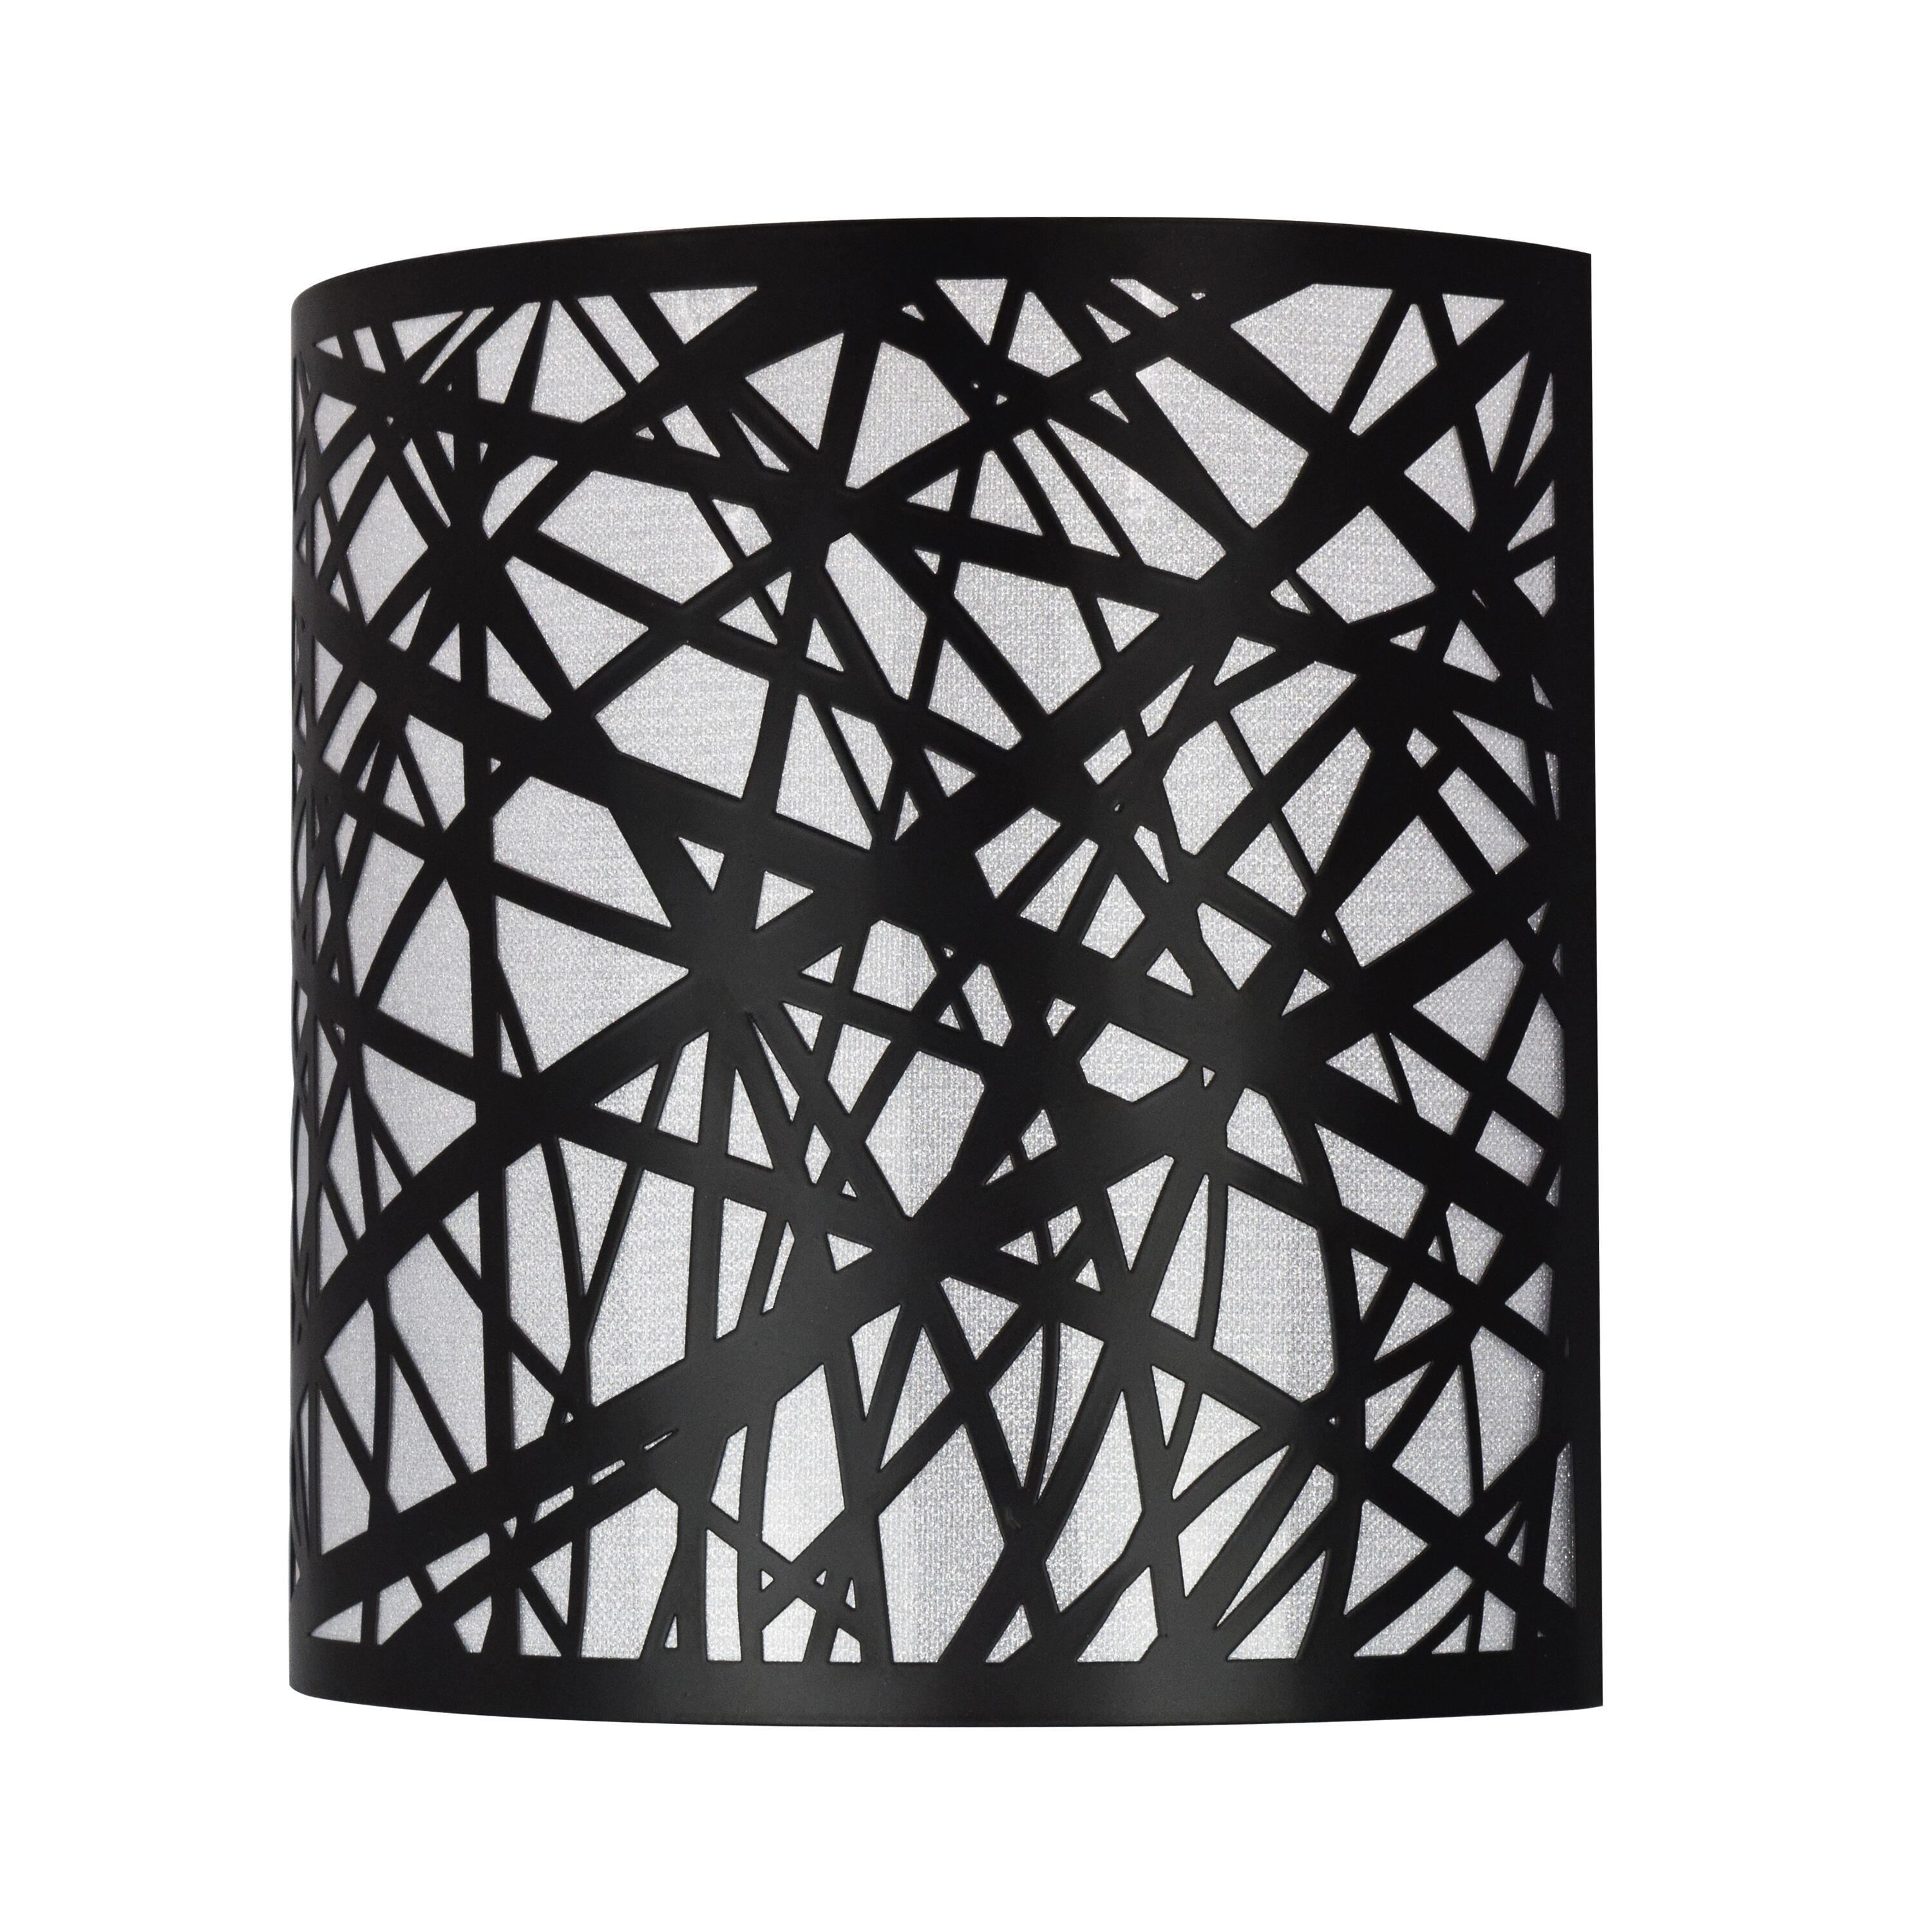 Applique Liverpool nero, in metallo, 23x23 cm, INSPIRE - 4